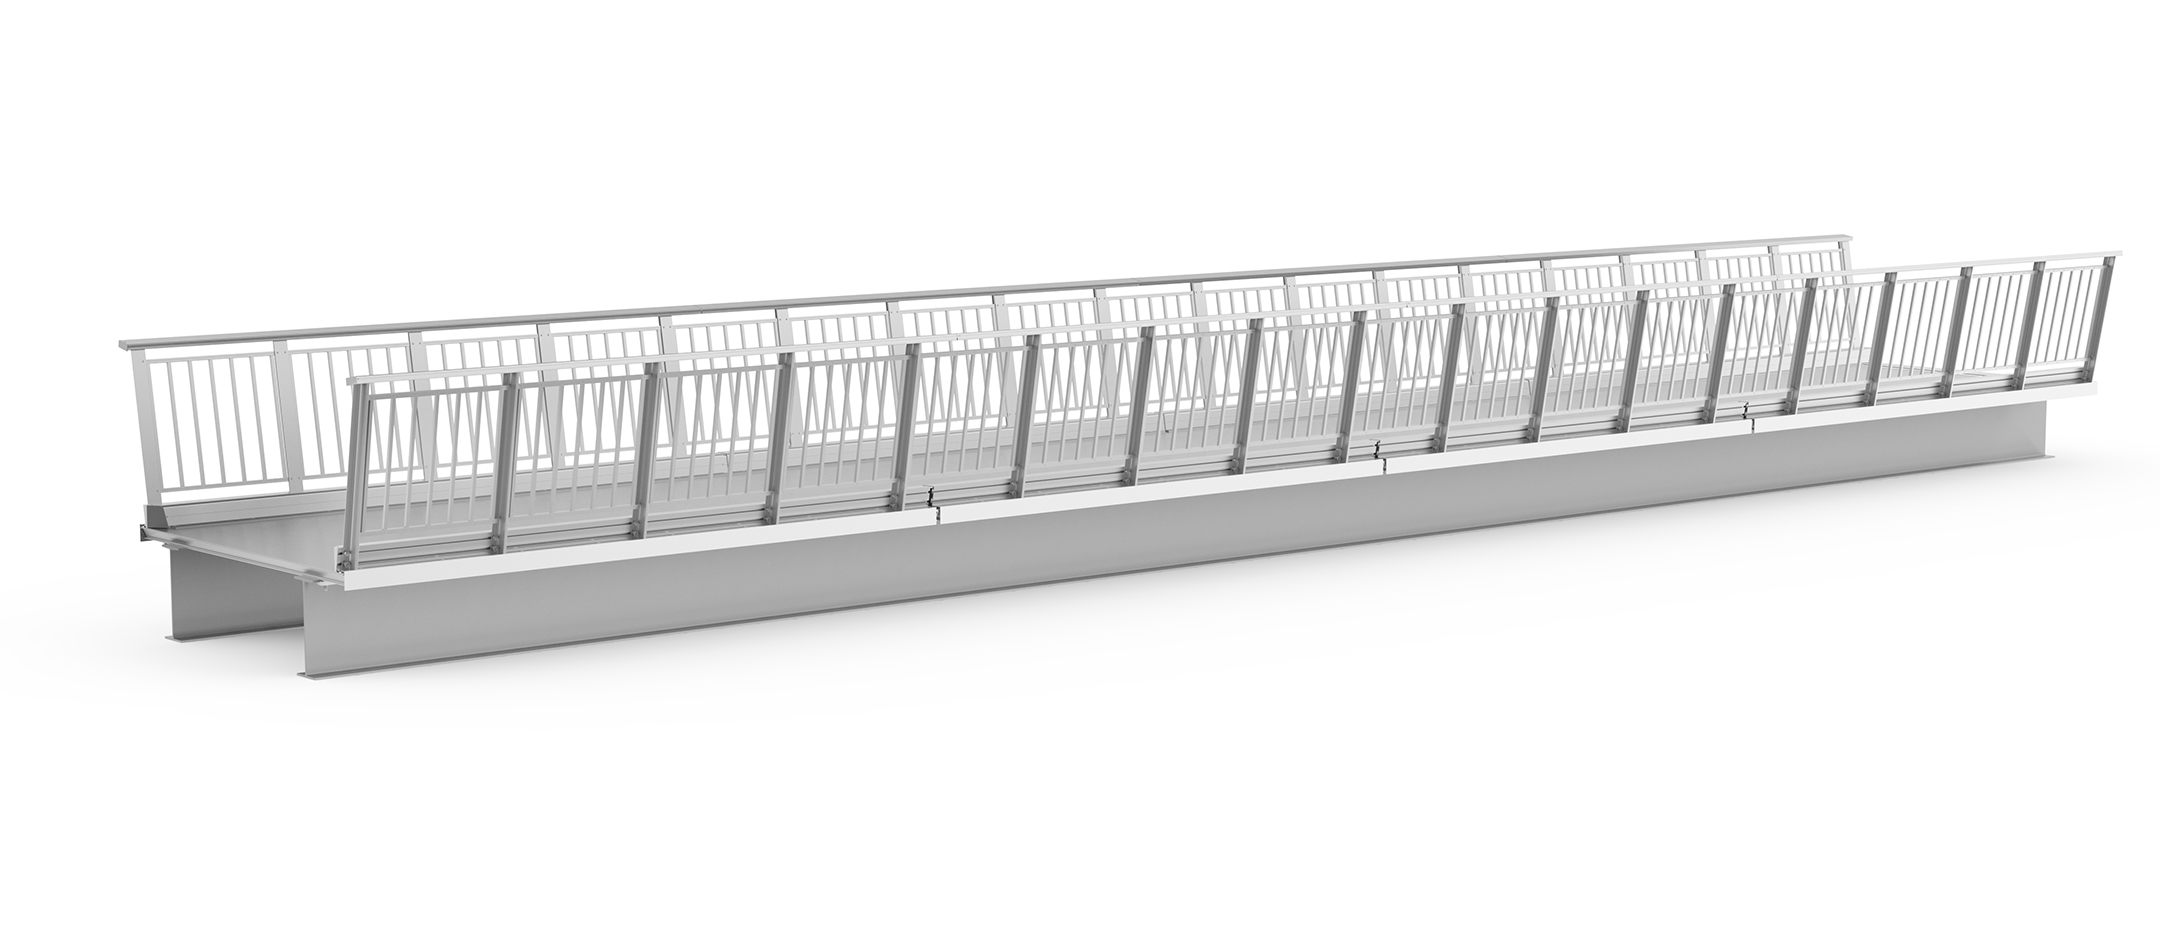 3D rendering of bridge with GuarDECK weld-free aluminum bridge decking